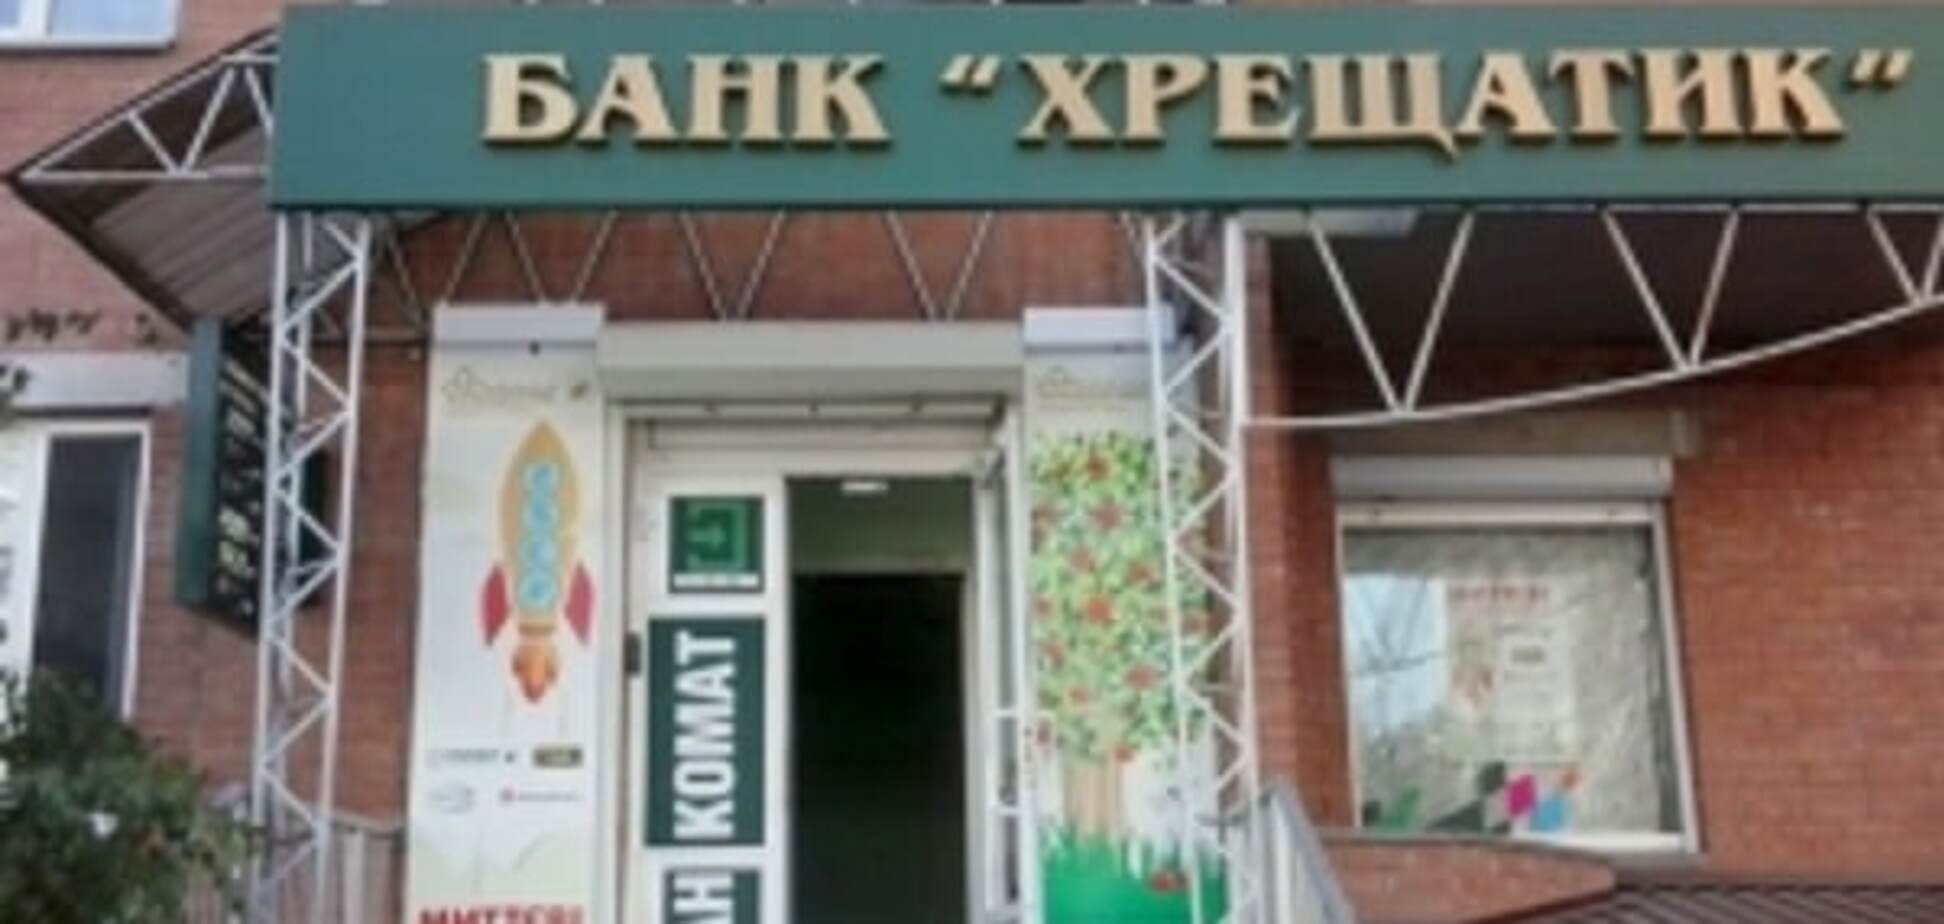 НБУ не может отрицать вину в банкротстве банка 'Крещатик'-СМИ